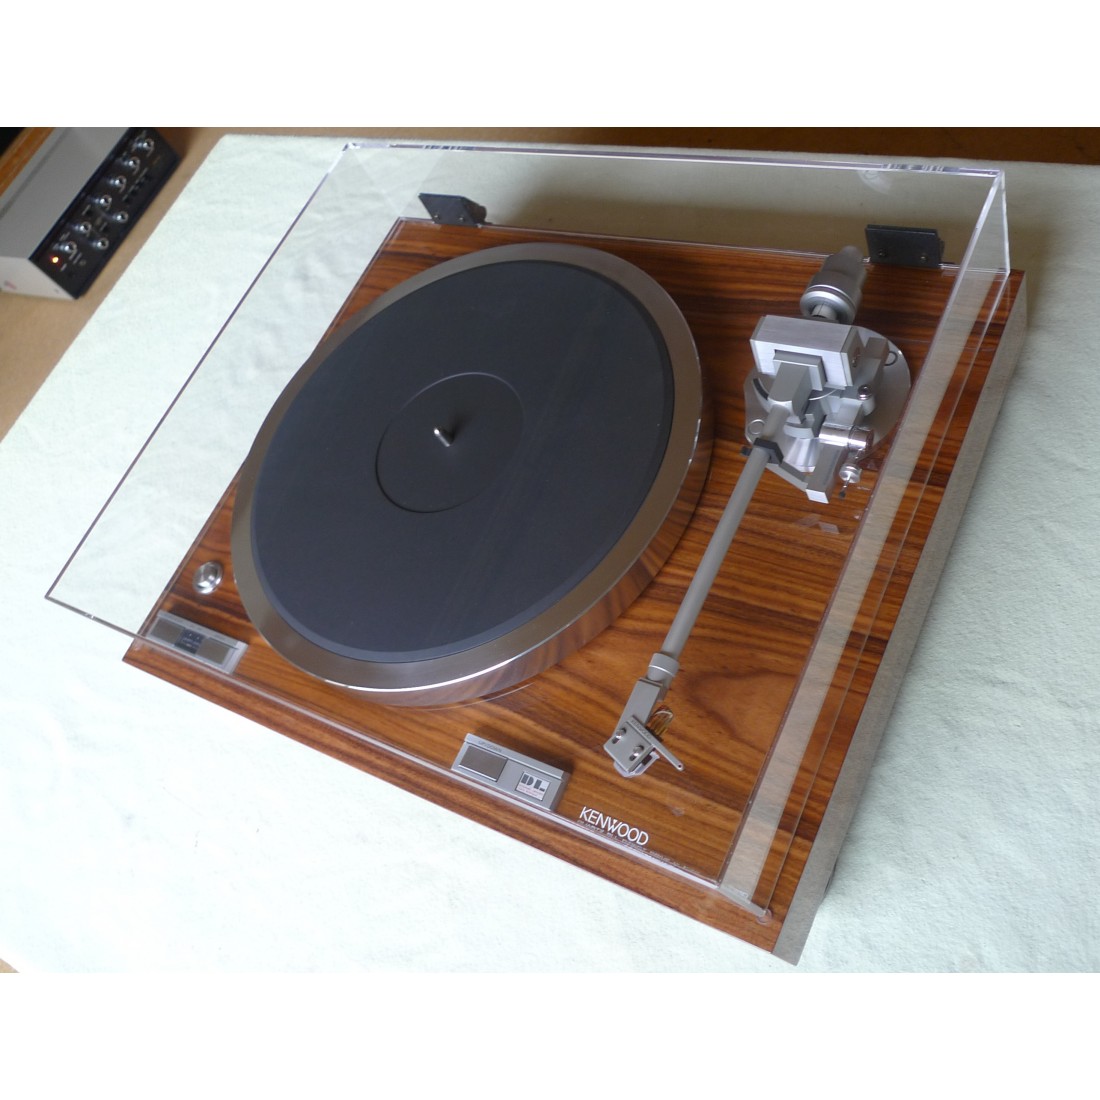 Platine vinyle Kenwood KP-770D direct drive + cellule Audio Technica